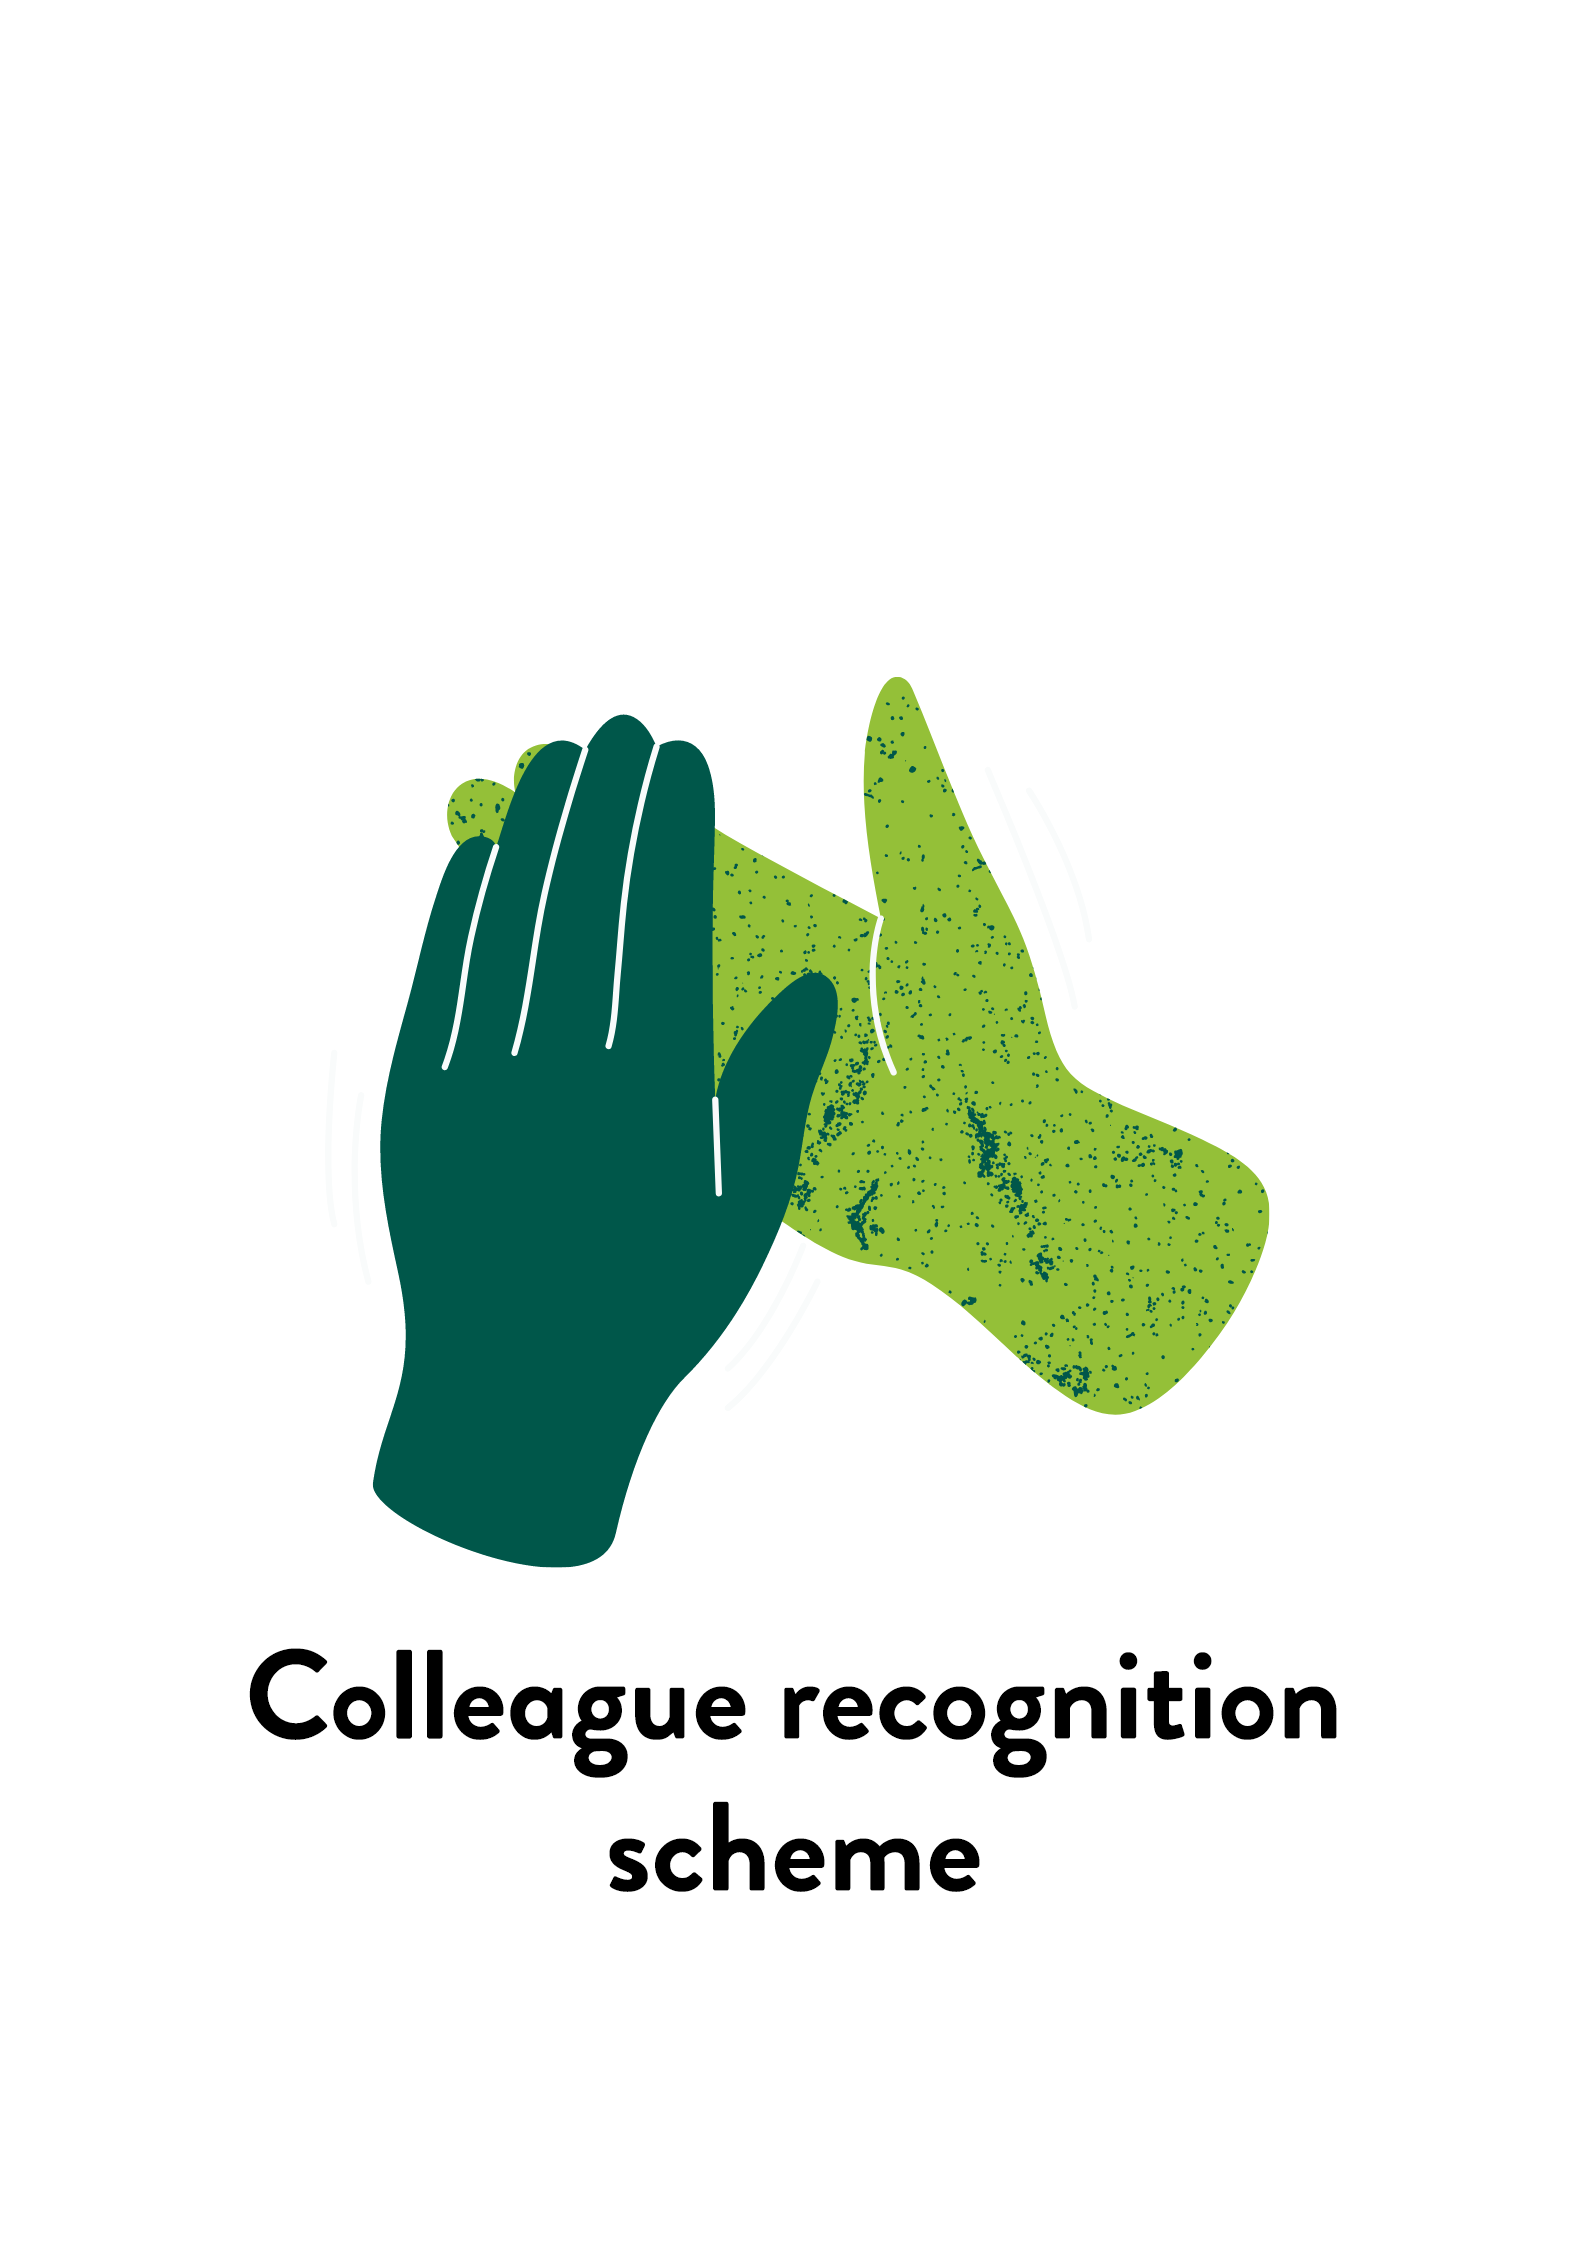 Colleague_recognition_scheme